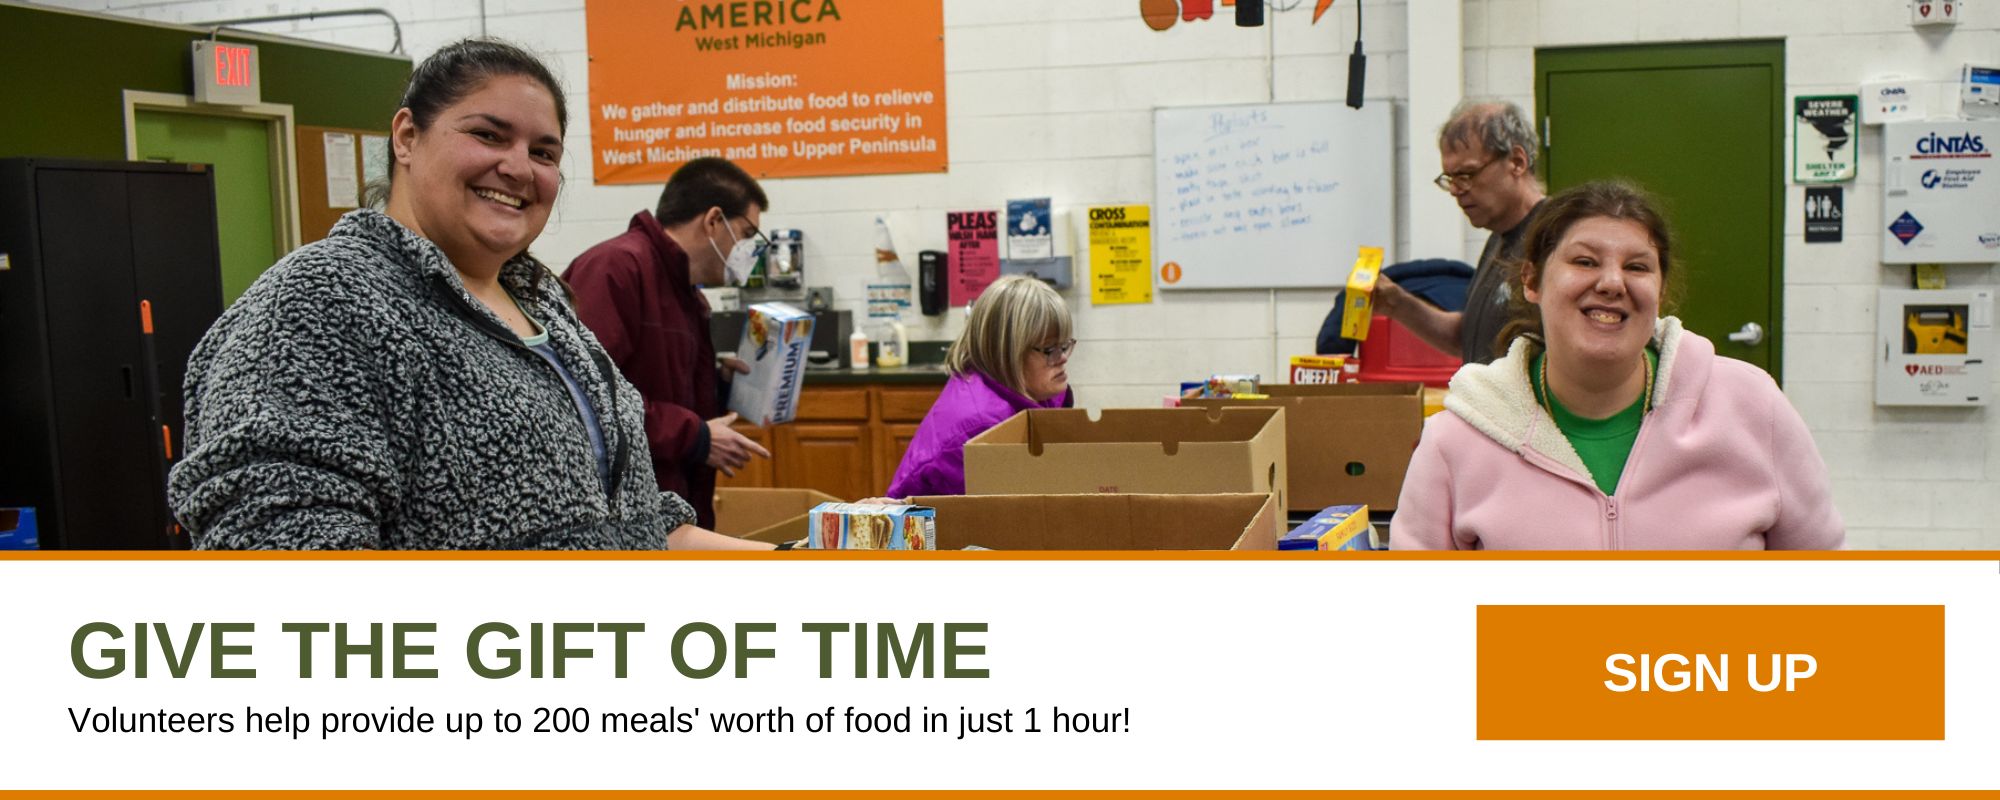 Dar el regalo del tiempo. ¡Los voluntarios ayudan a proporcionar hasta 200 comidas en solo 1 hora! Inscribirse